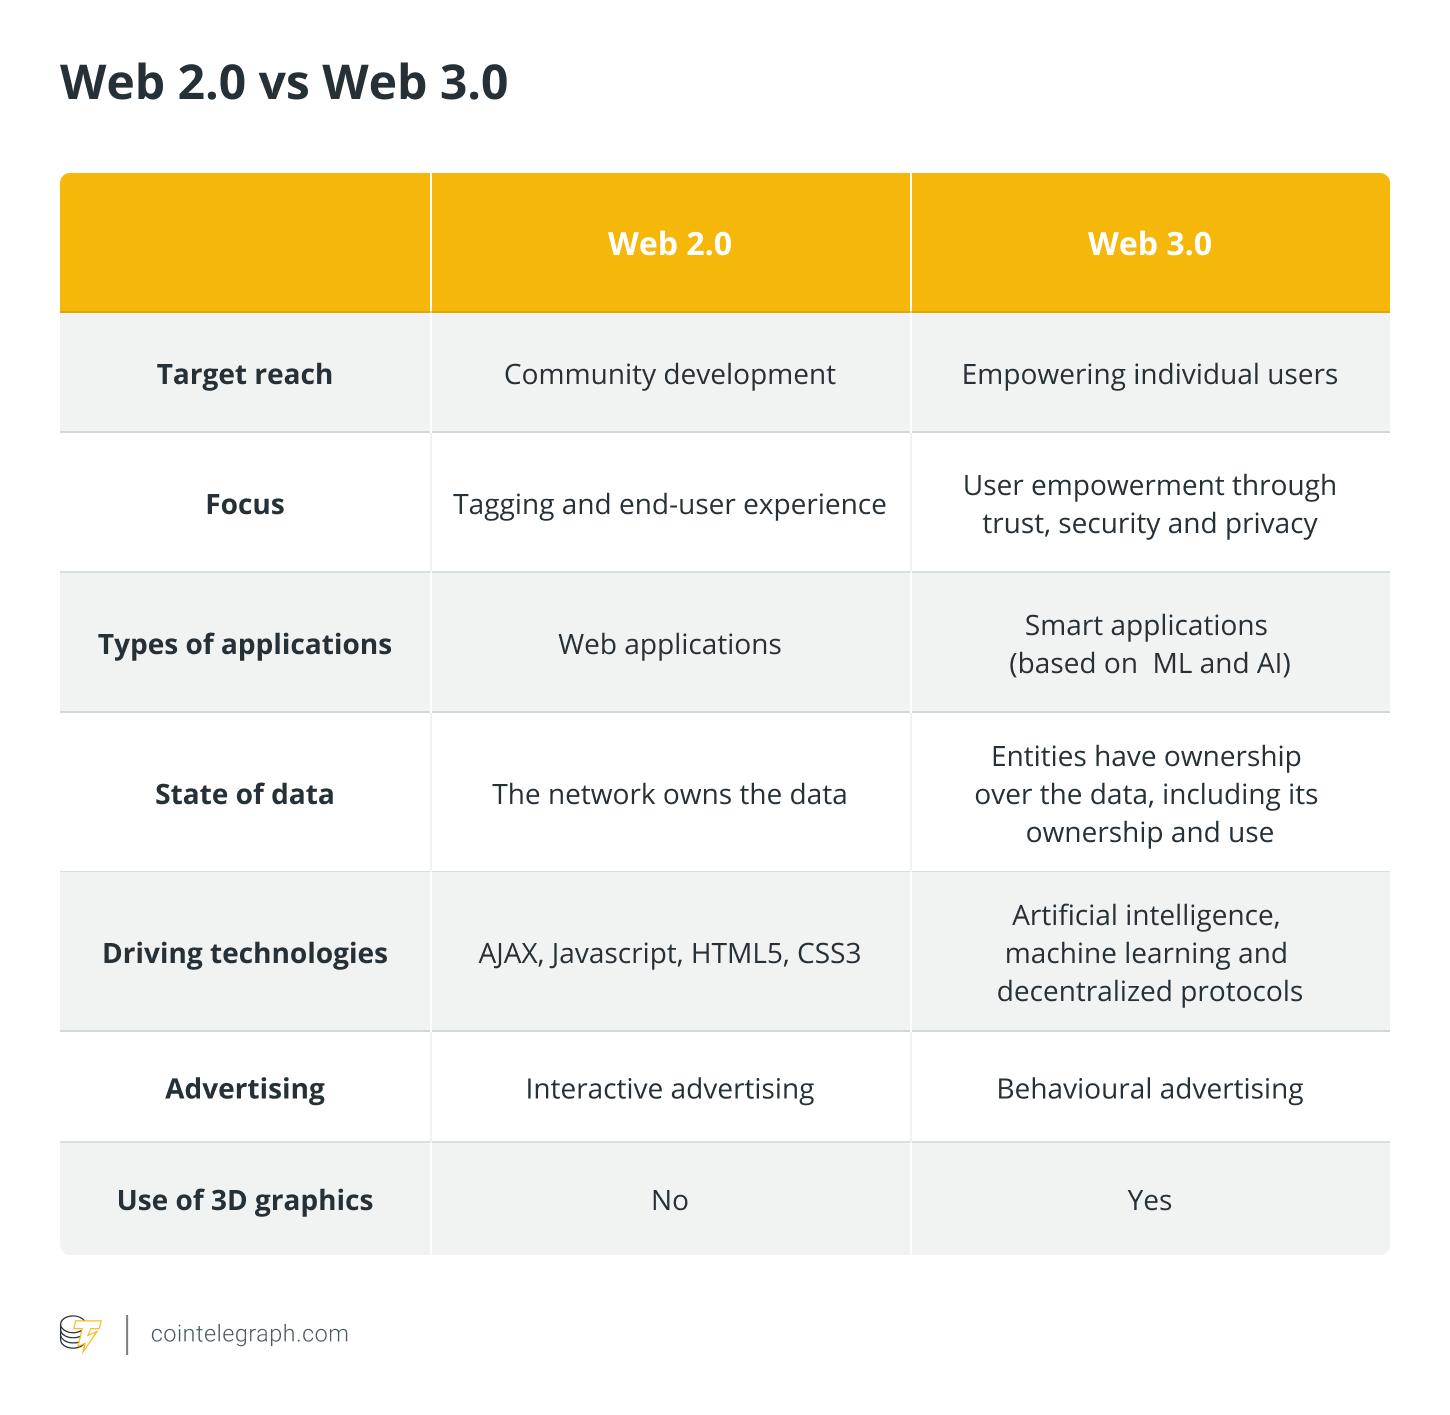 Действительно ли Web3 улучшает основные отрасли и продукты?